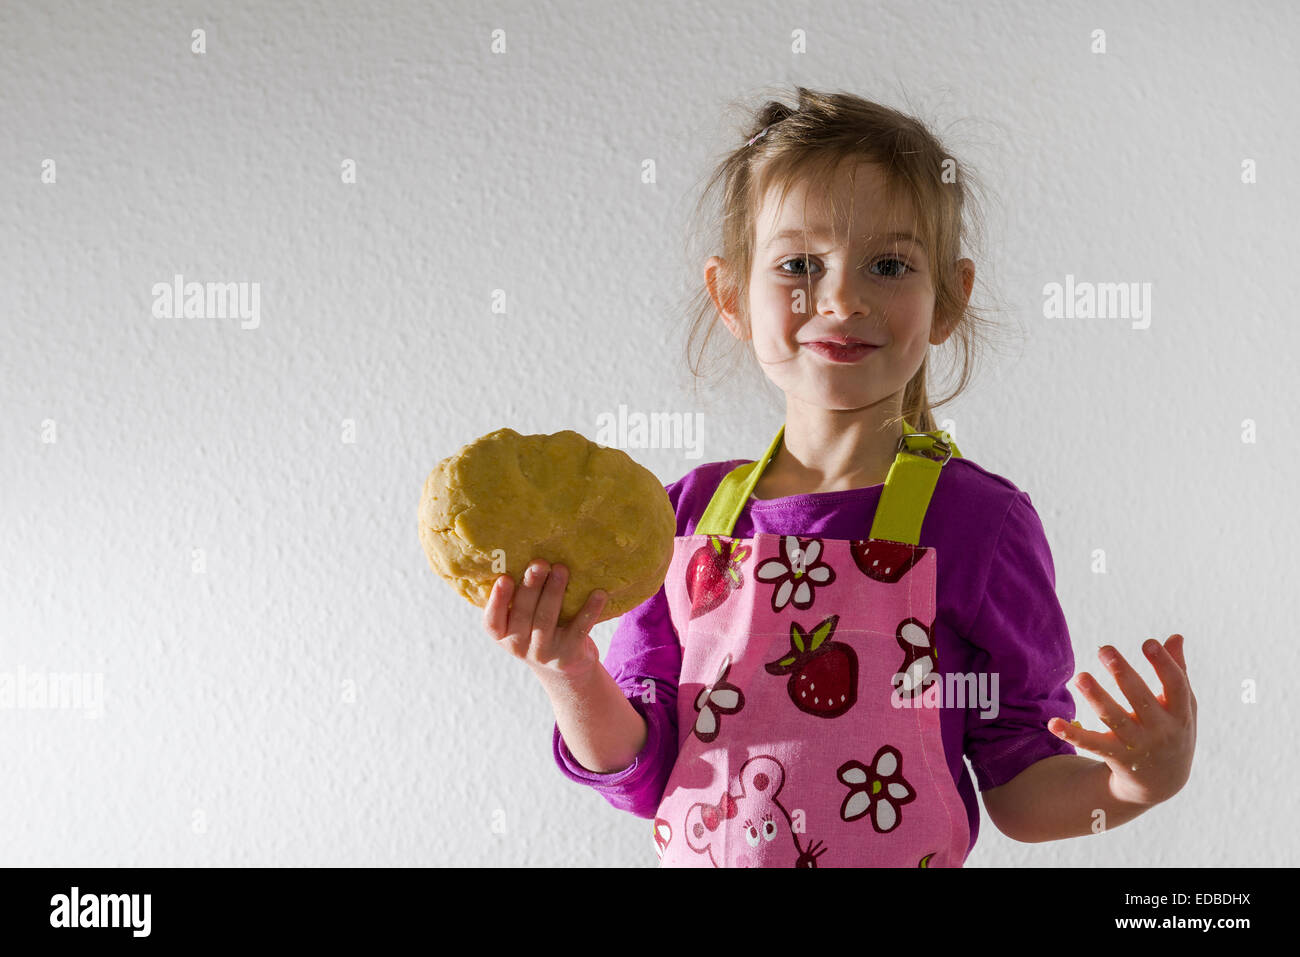 Fille, 3 ans, la cuisson, tenant un morceau de pâte dans sa main Banque D'Images